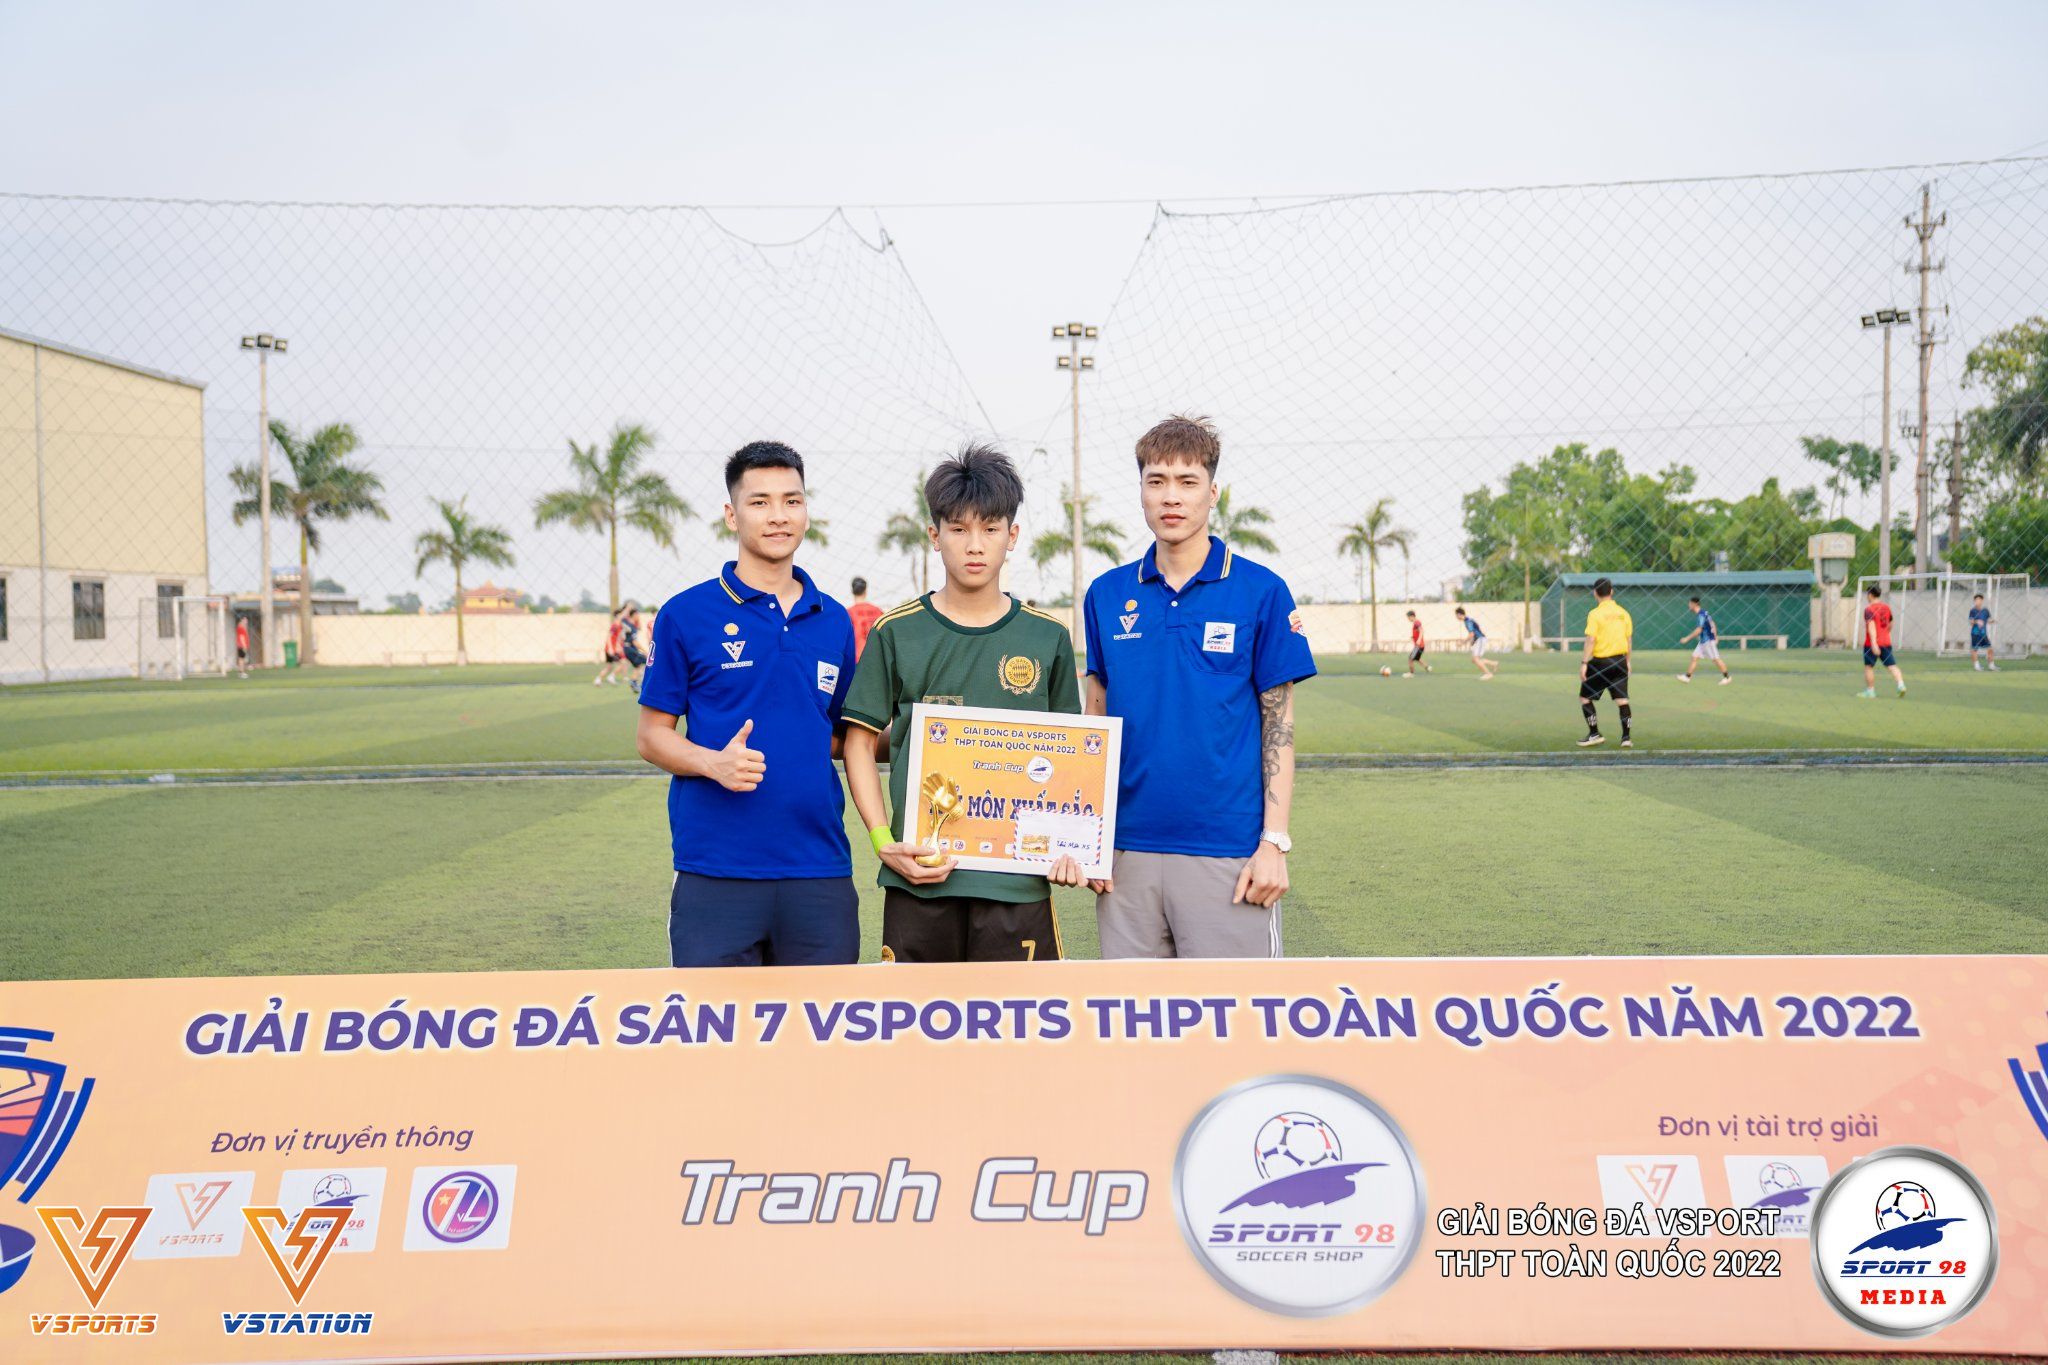 Vsports THPT khu vực Thái Bình